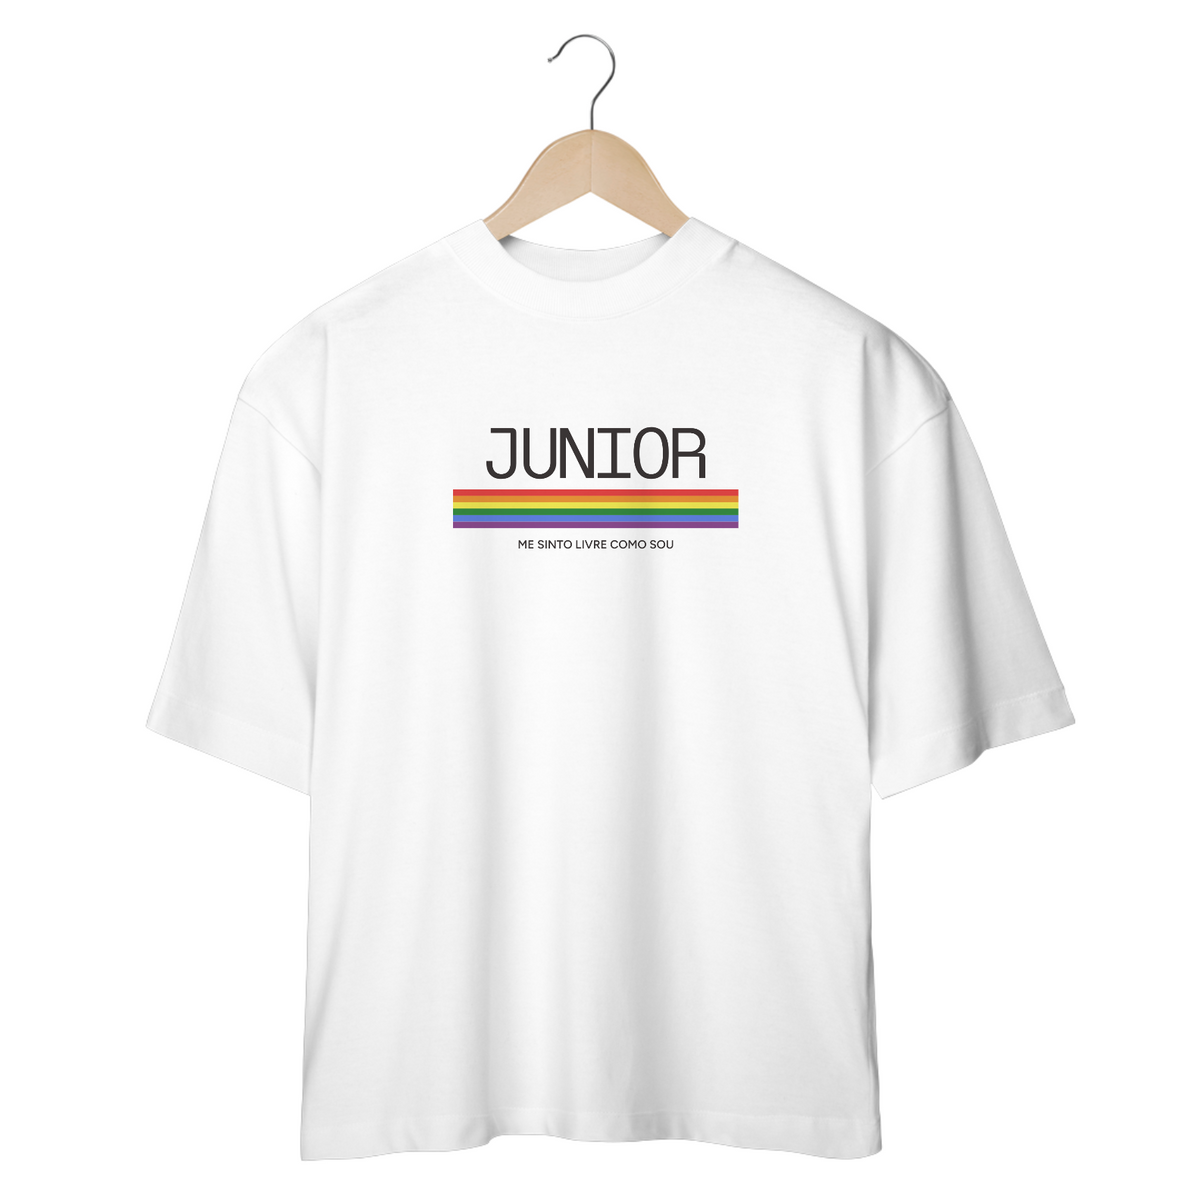 Nome do produto: Camiseta Oversized - Pride JUNIOR me sinto livre